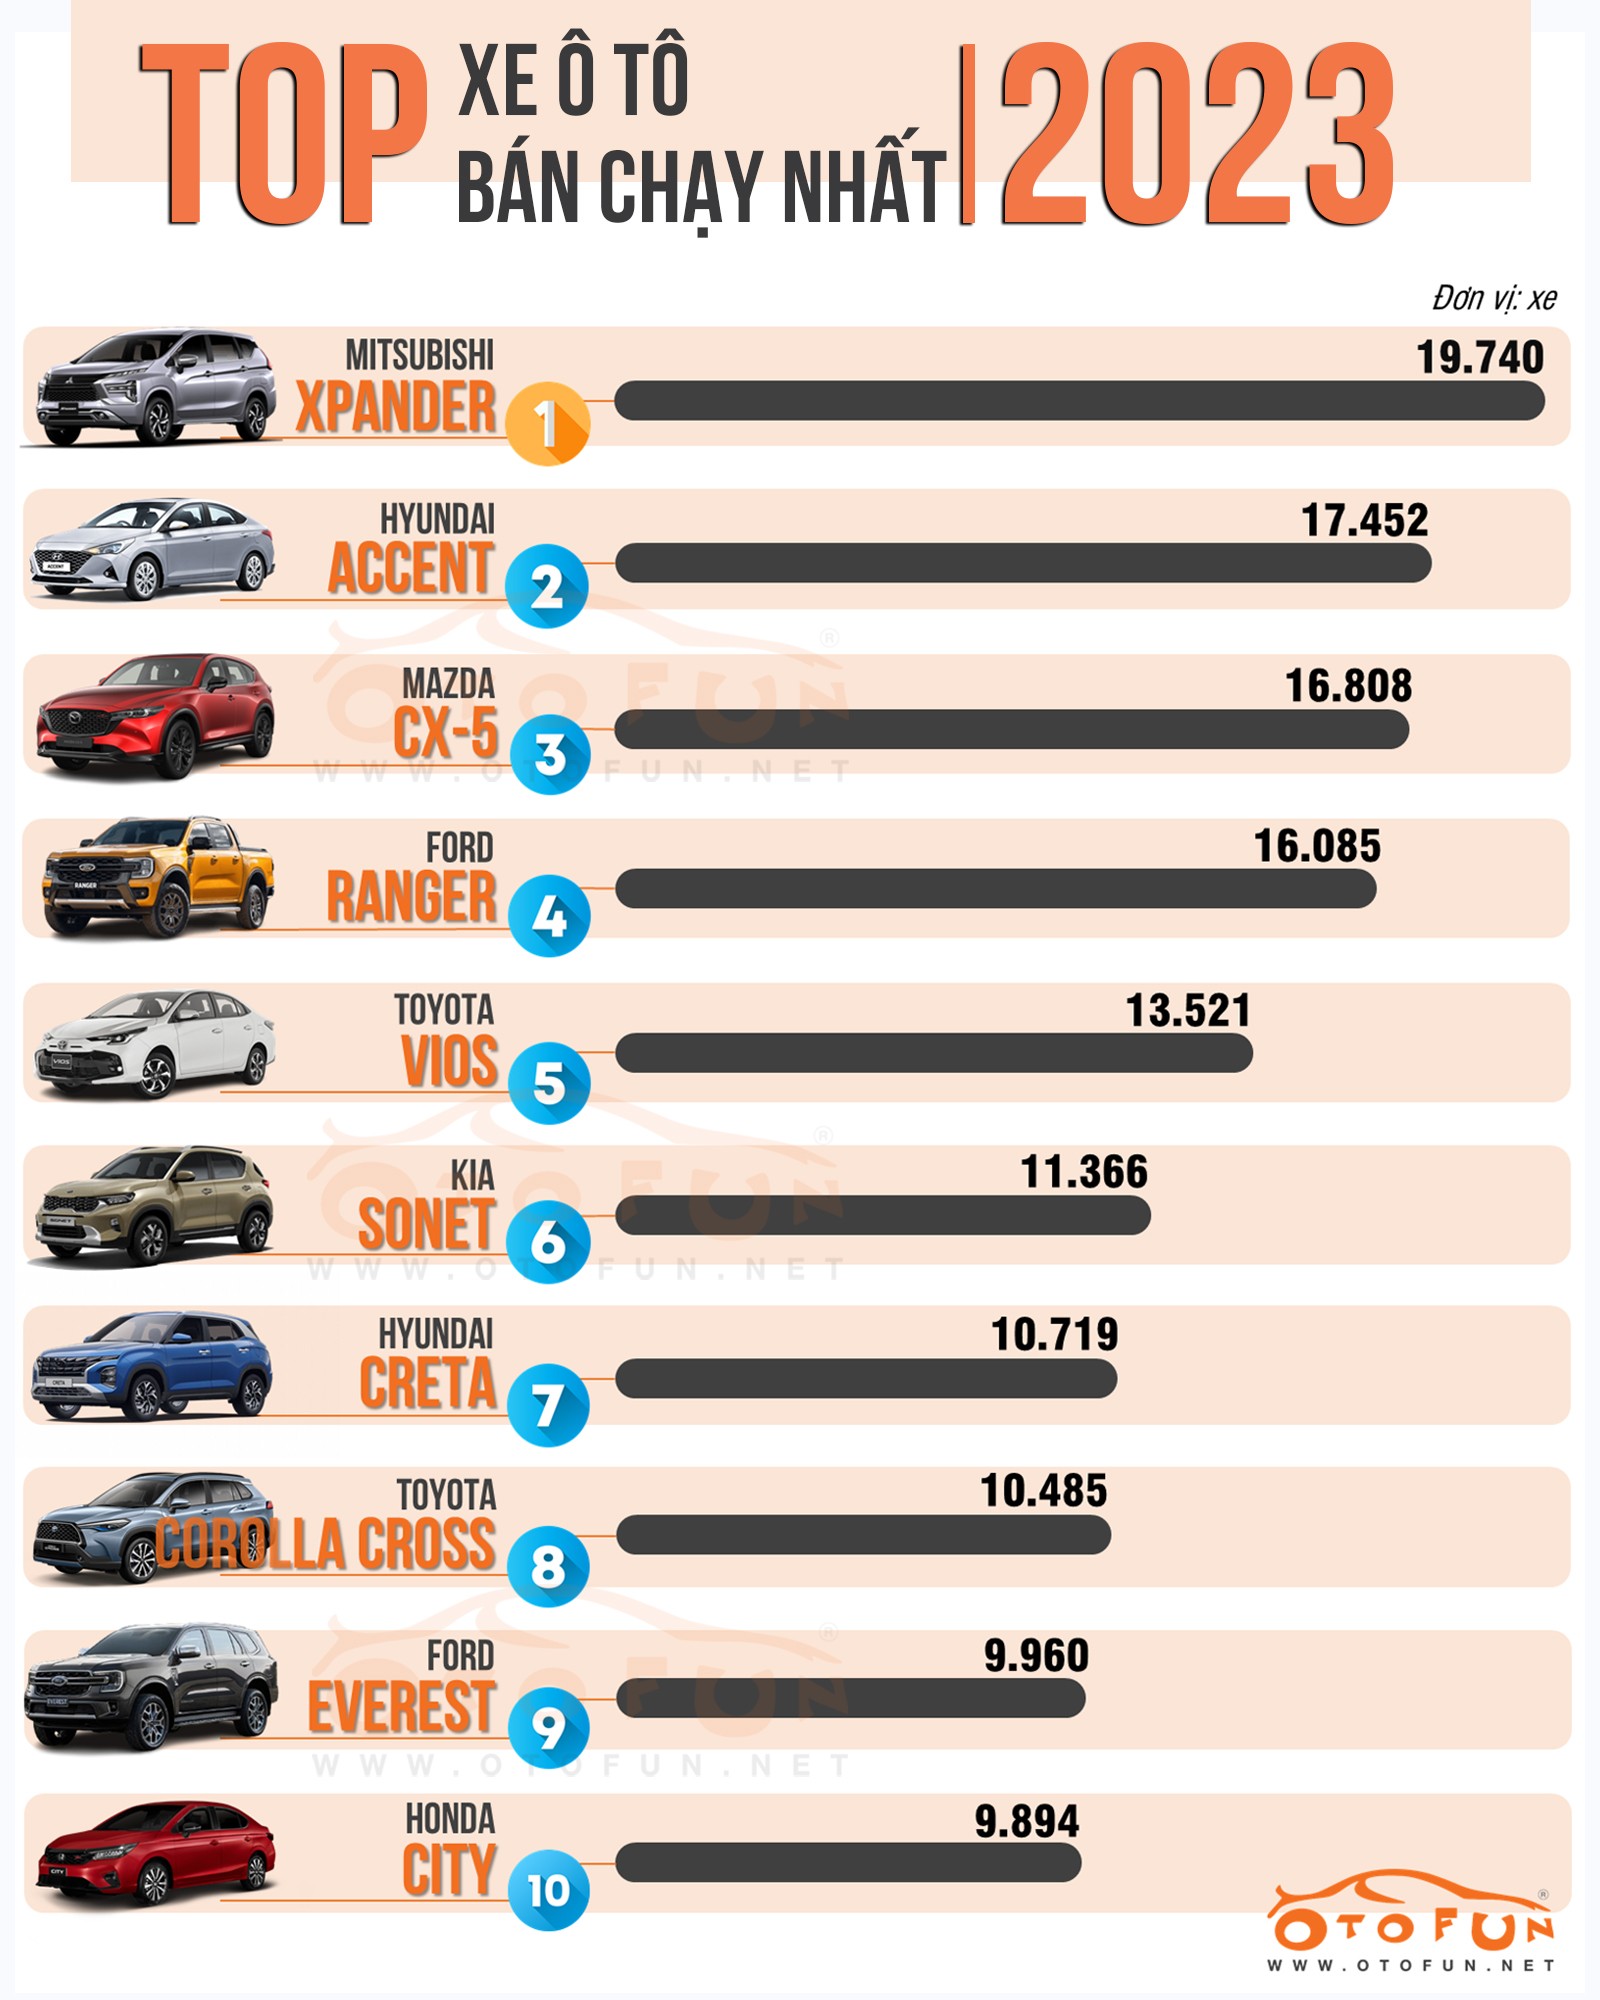 Danh sách 10 xe bán chạy nhất năm 2023: Gầm cao lên ngôi, xe lắp ráp áp đảo xe nhập